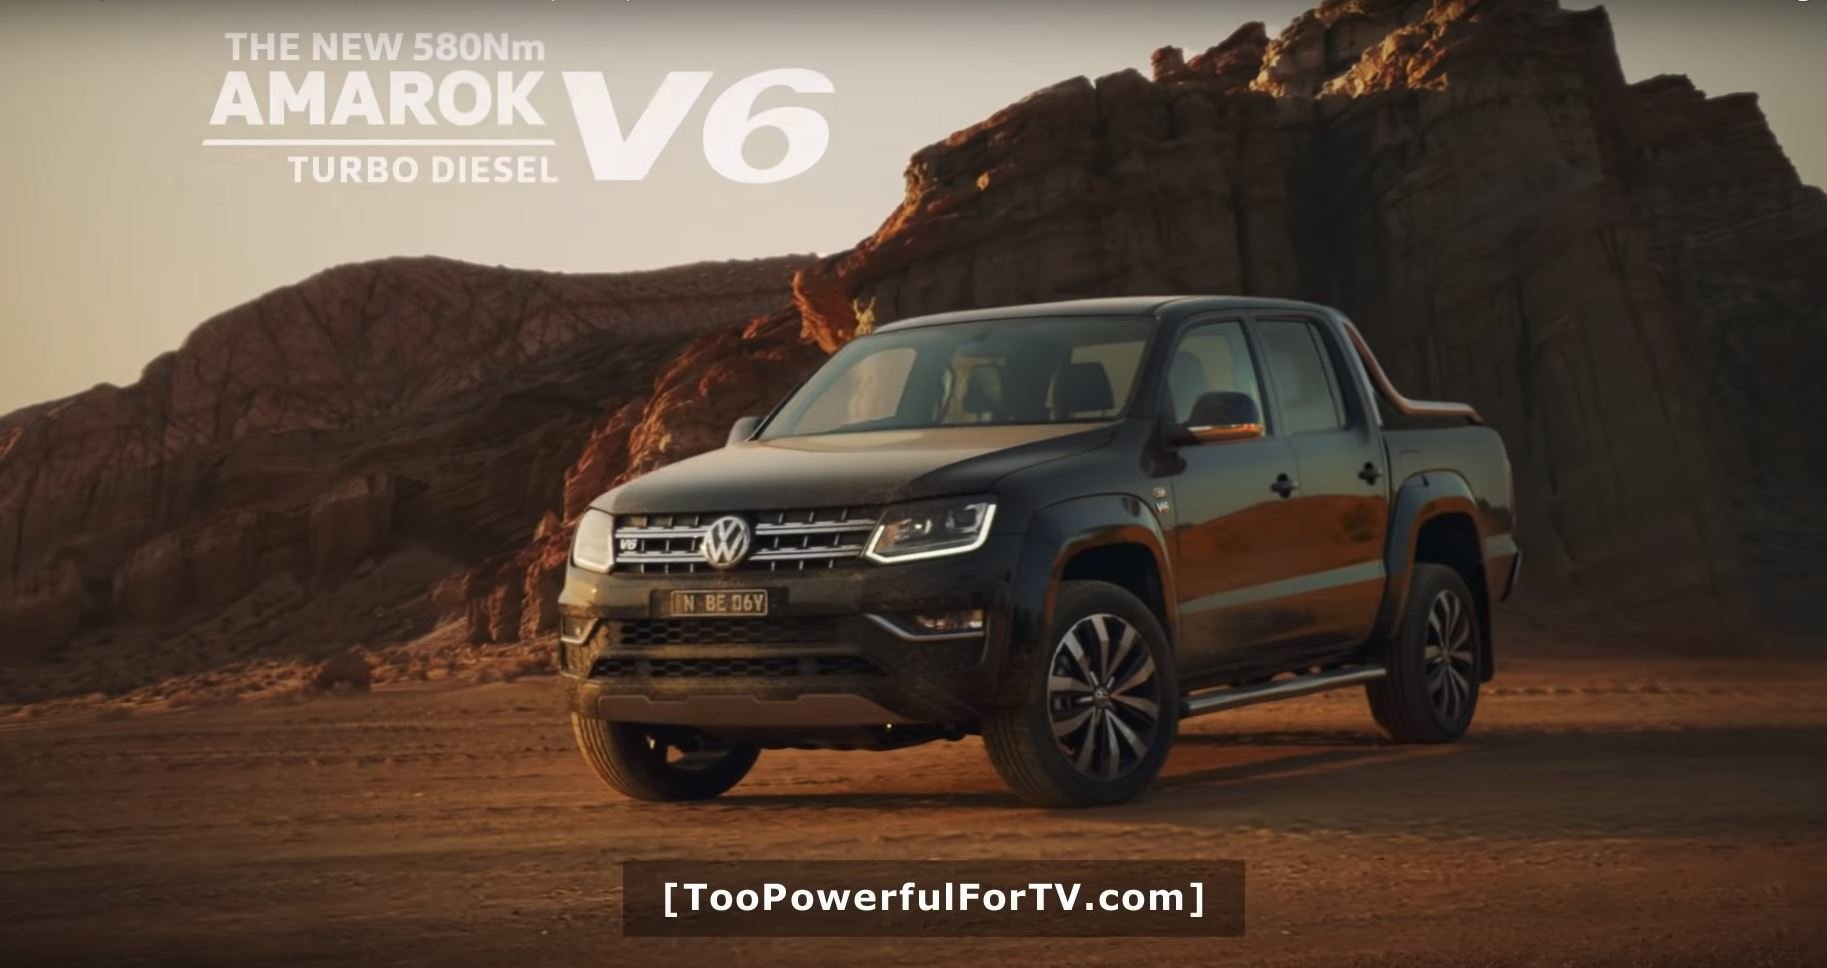 Reklama na Volkswagen Amarok V6 si utahovala ze zákazů v reklamách, nakonec ji ale také zakázali